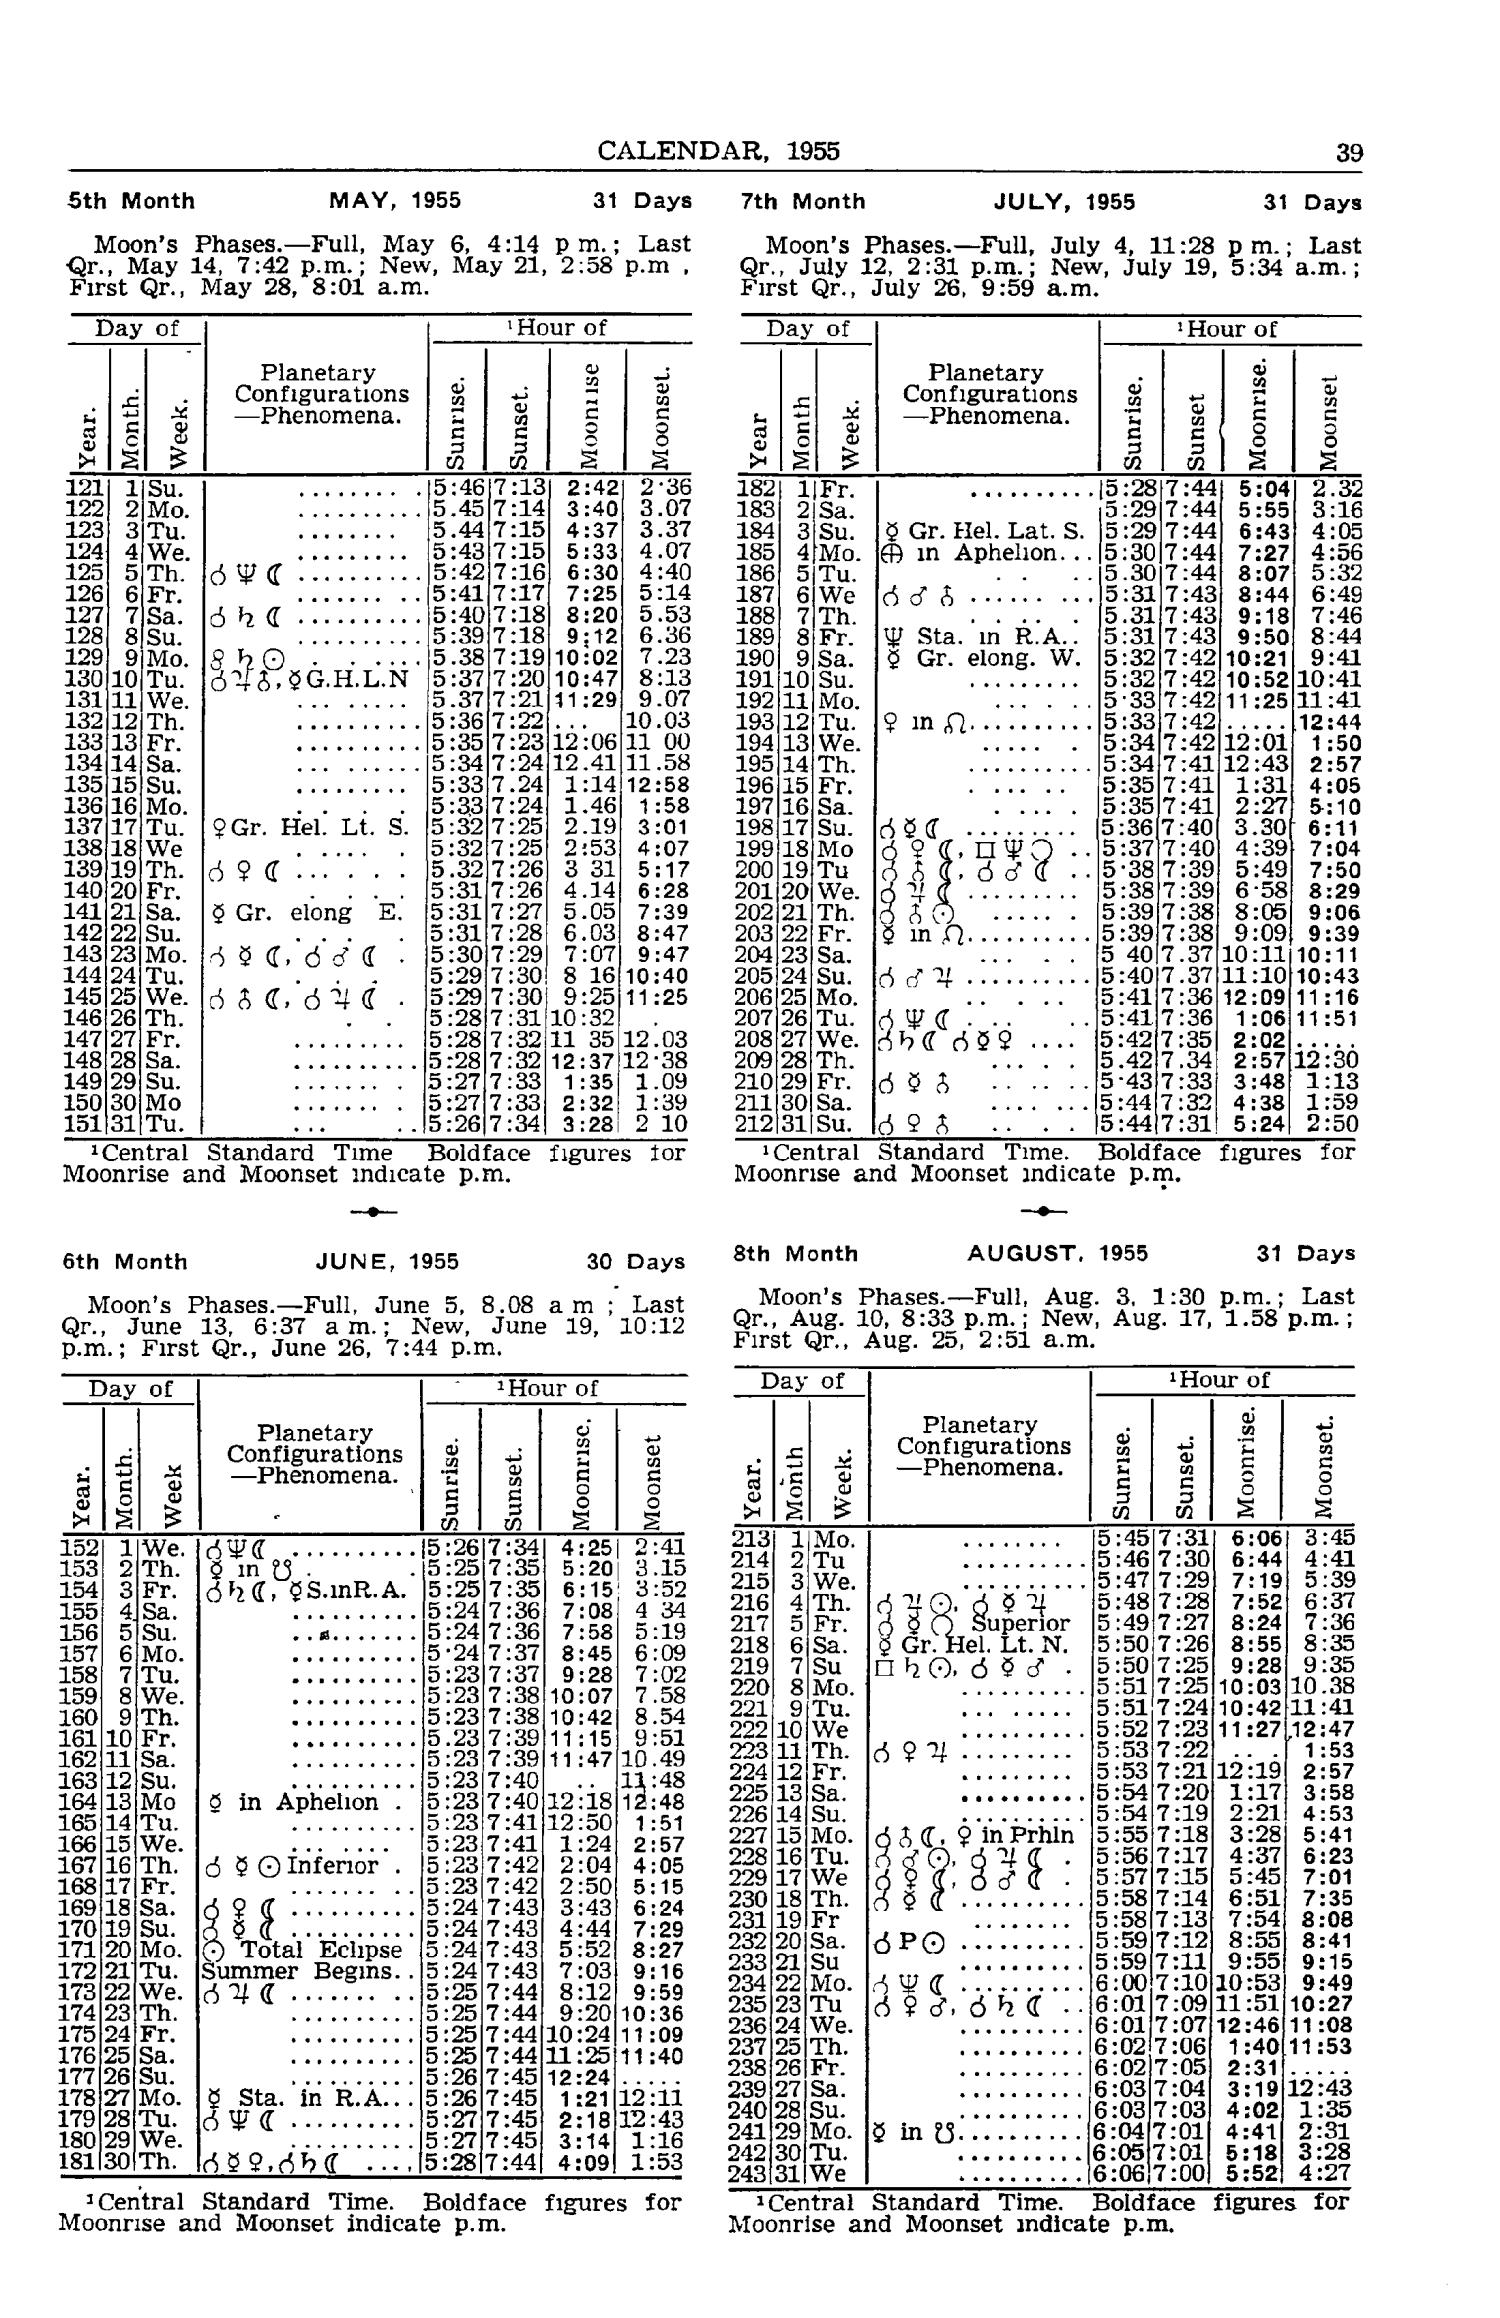 Texas Almanac, 1954-1955
                                                
                                                    39
                                                